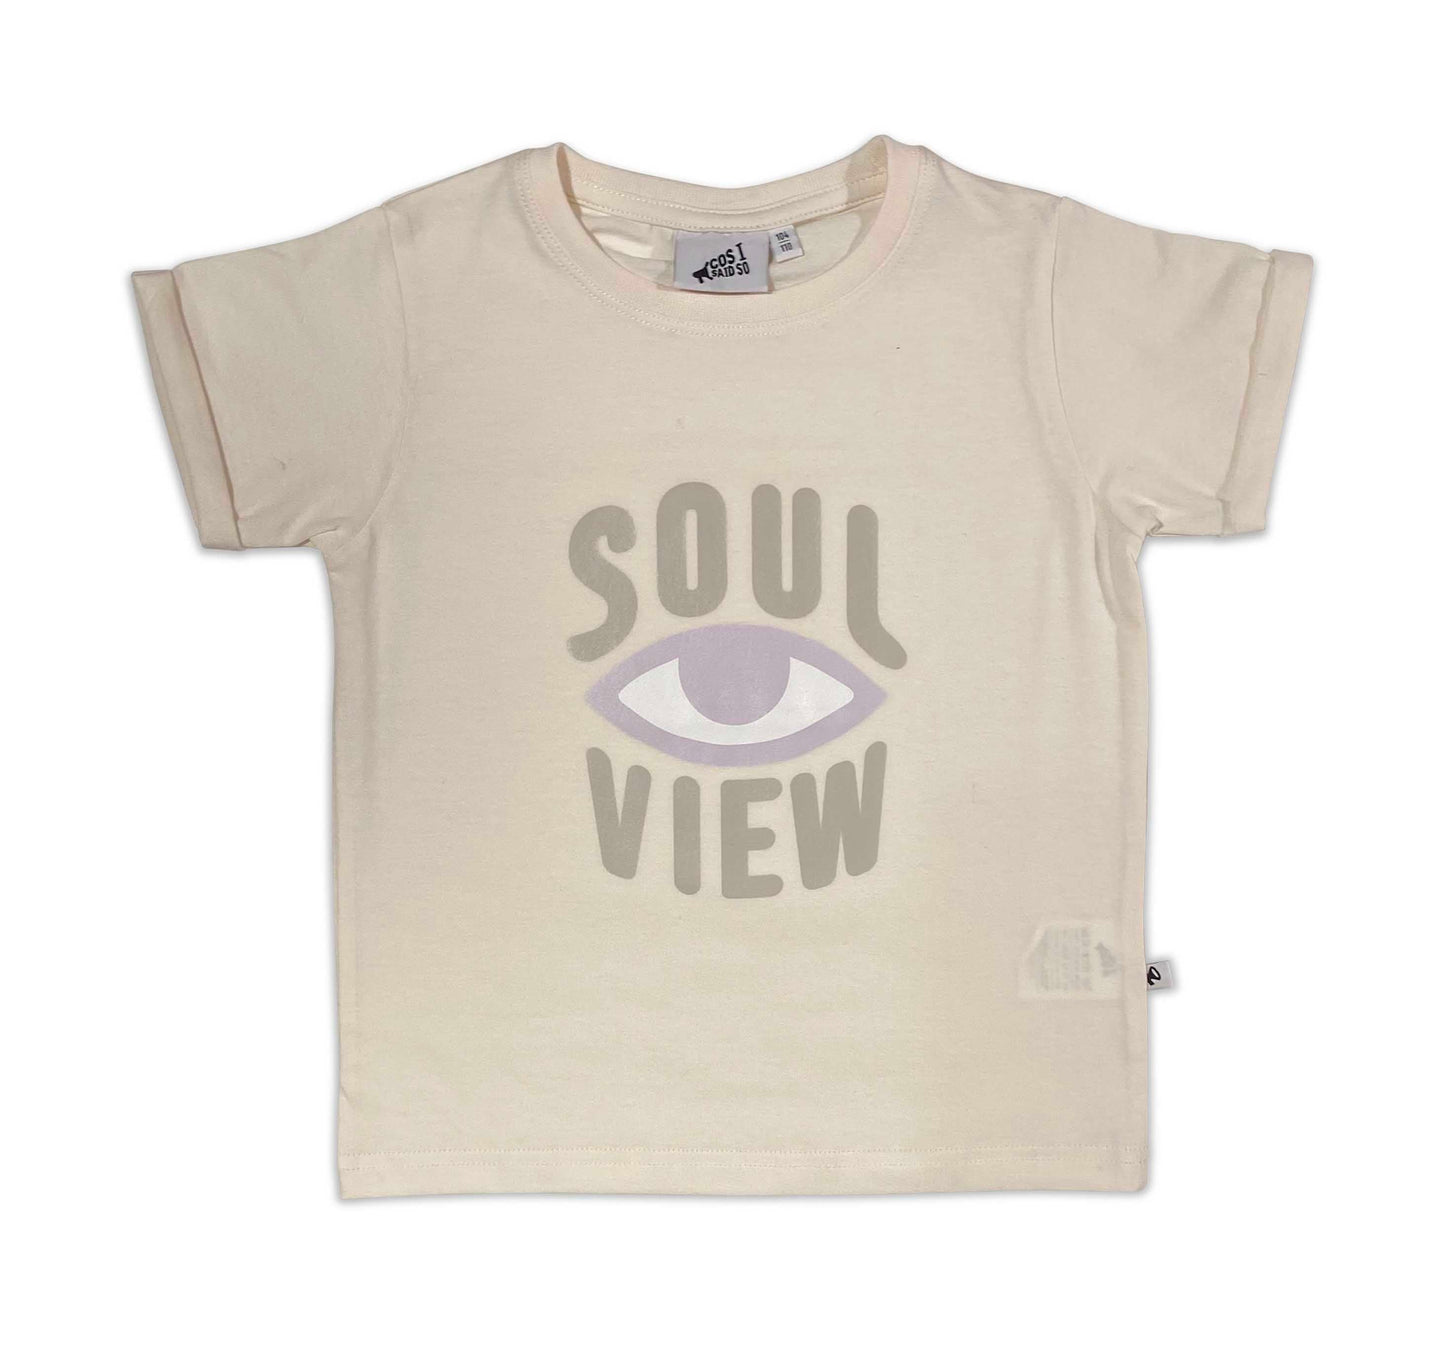 Soul View T-Shirt